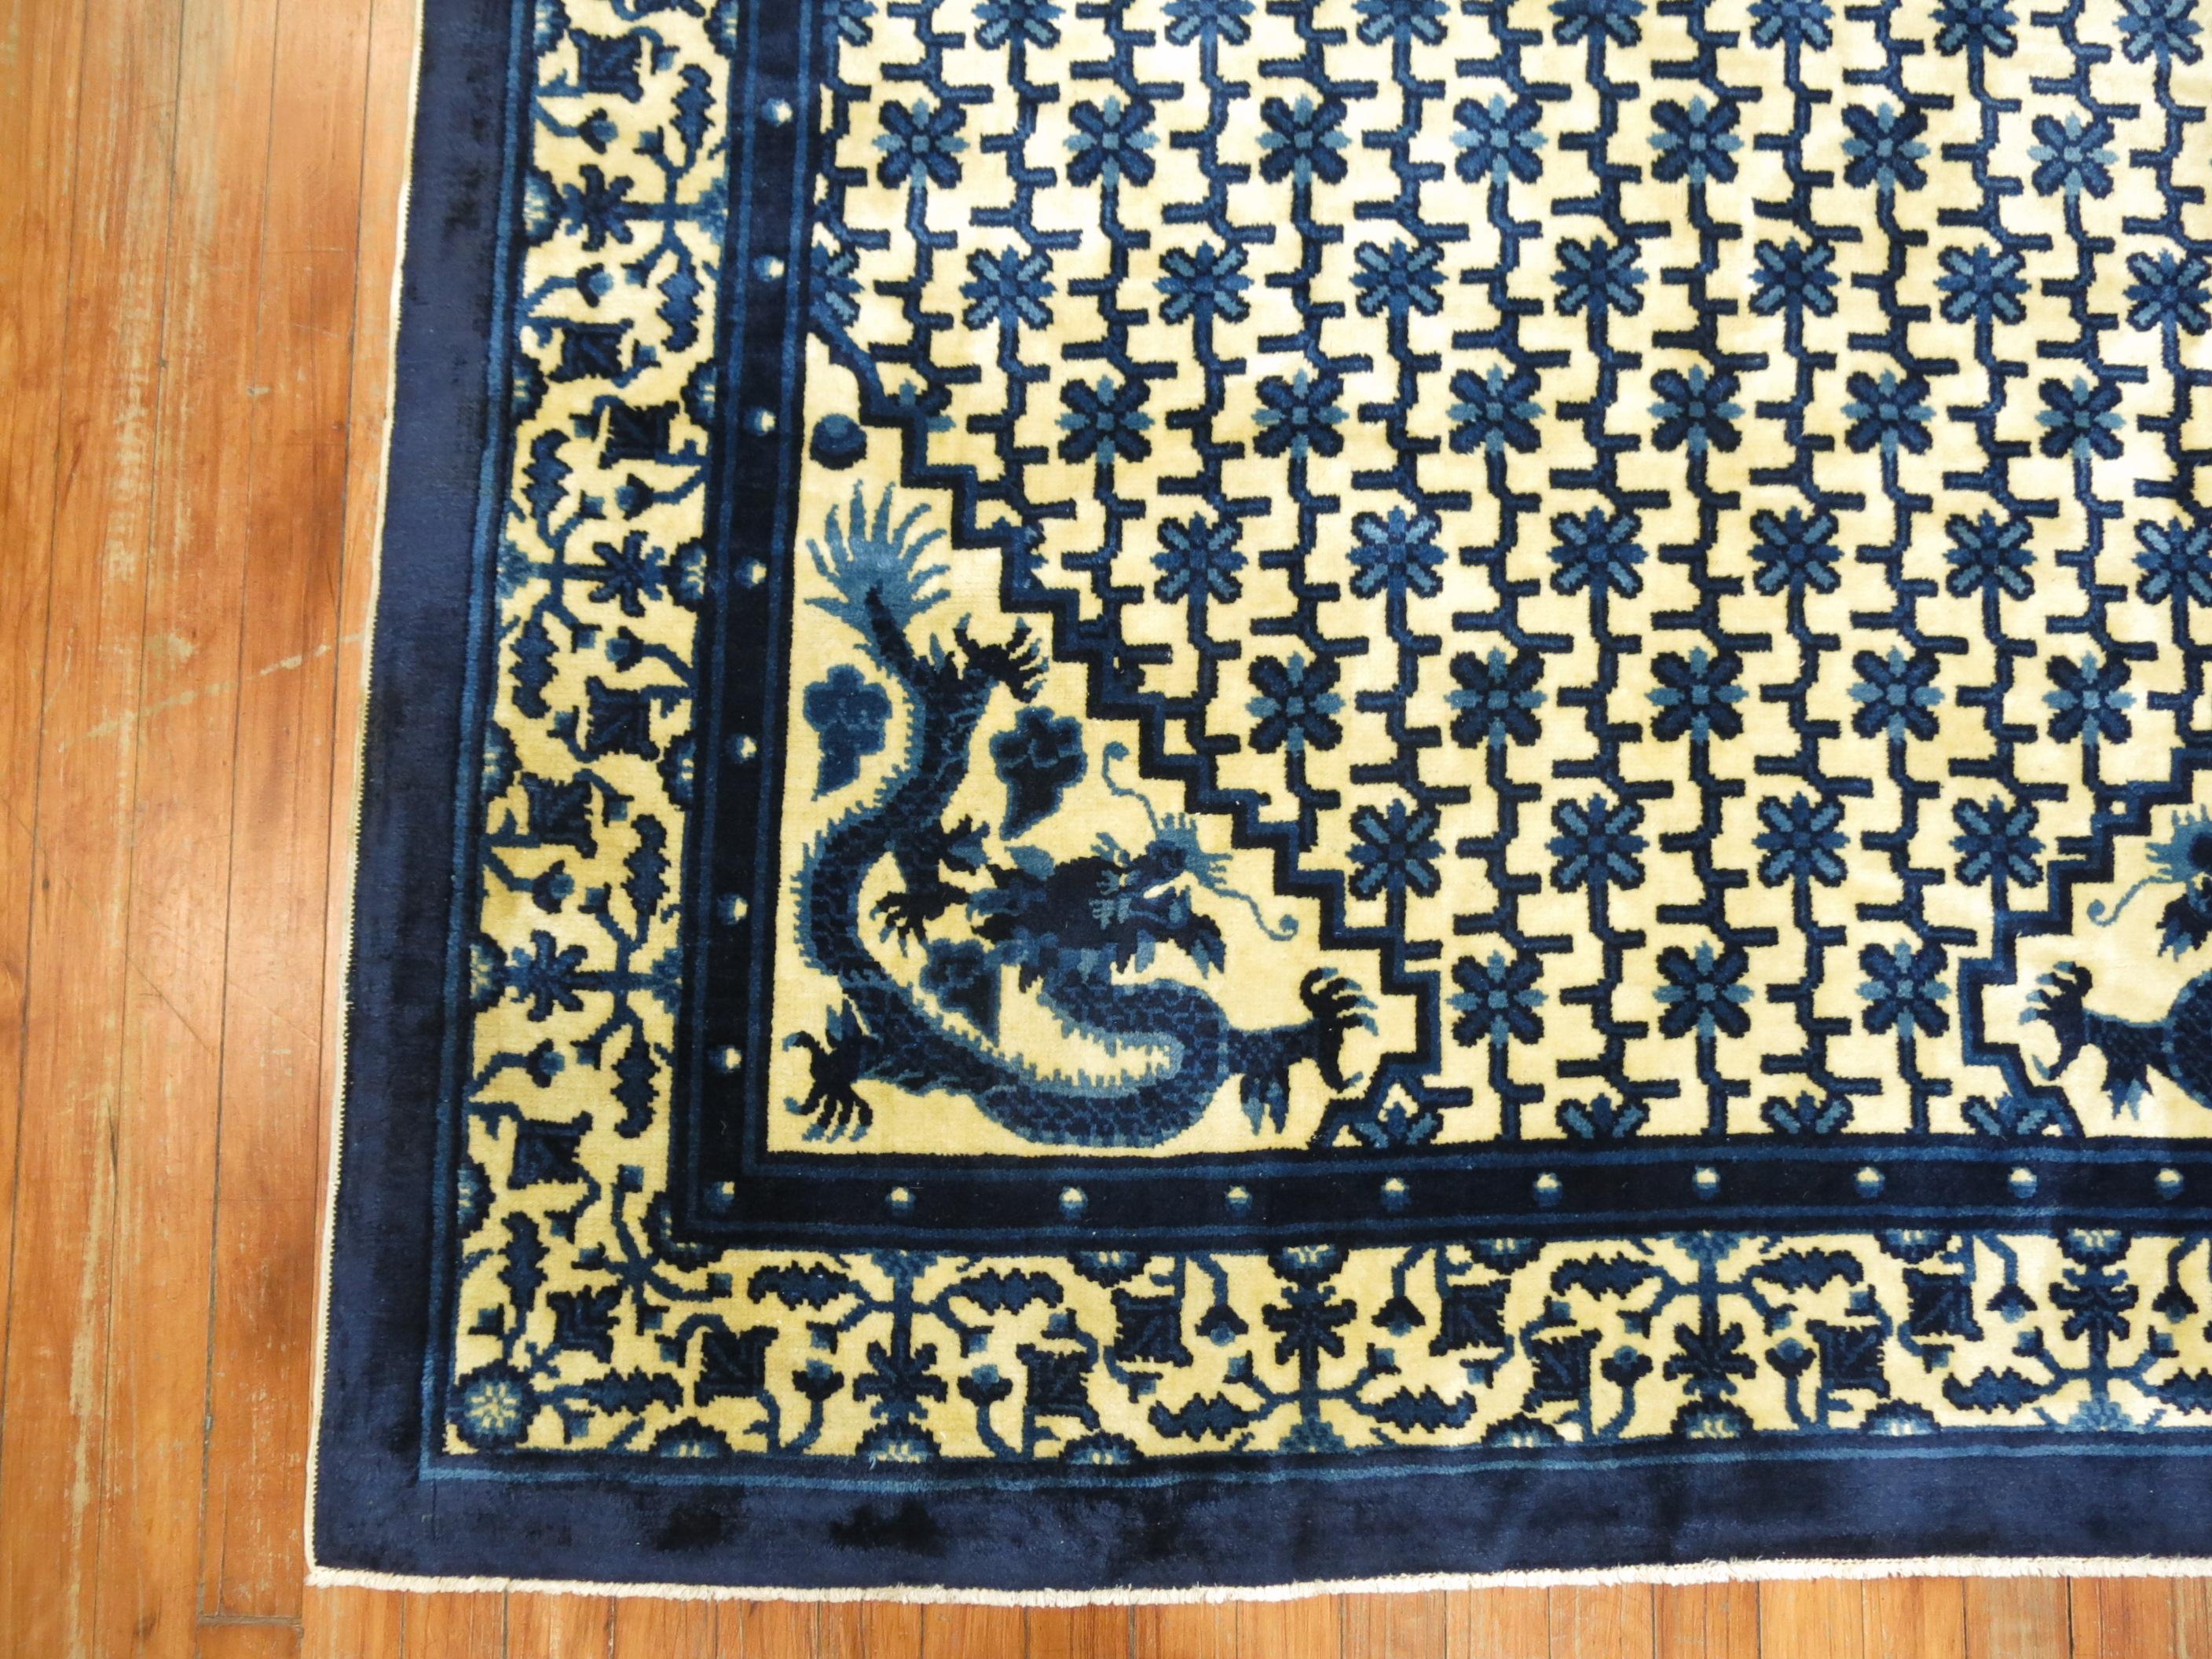 Chinesischer Tier-Drachen-Teppich in ausgezeichnetem Zustand auf cremegelbem Grund.

5' x 8'